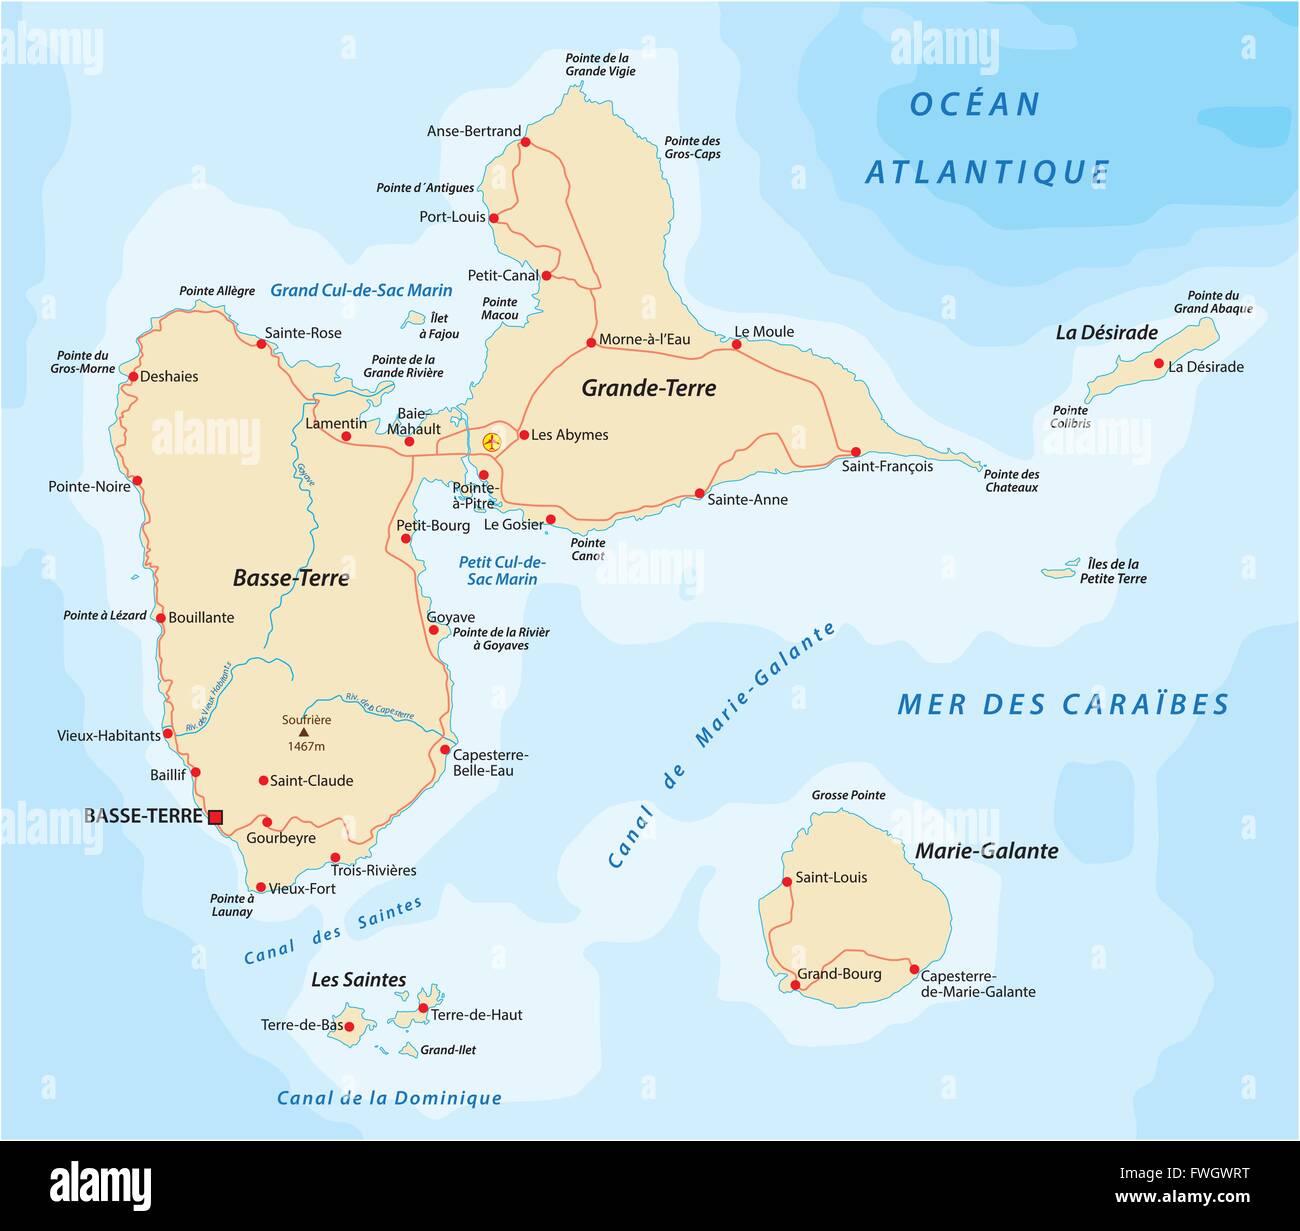 Carte routière de la Guadeloupe Illustration de Vecteur